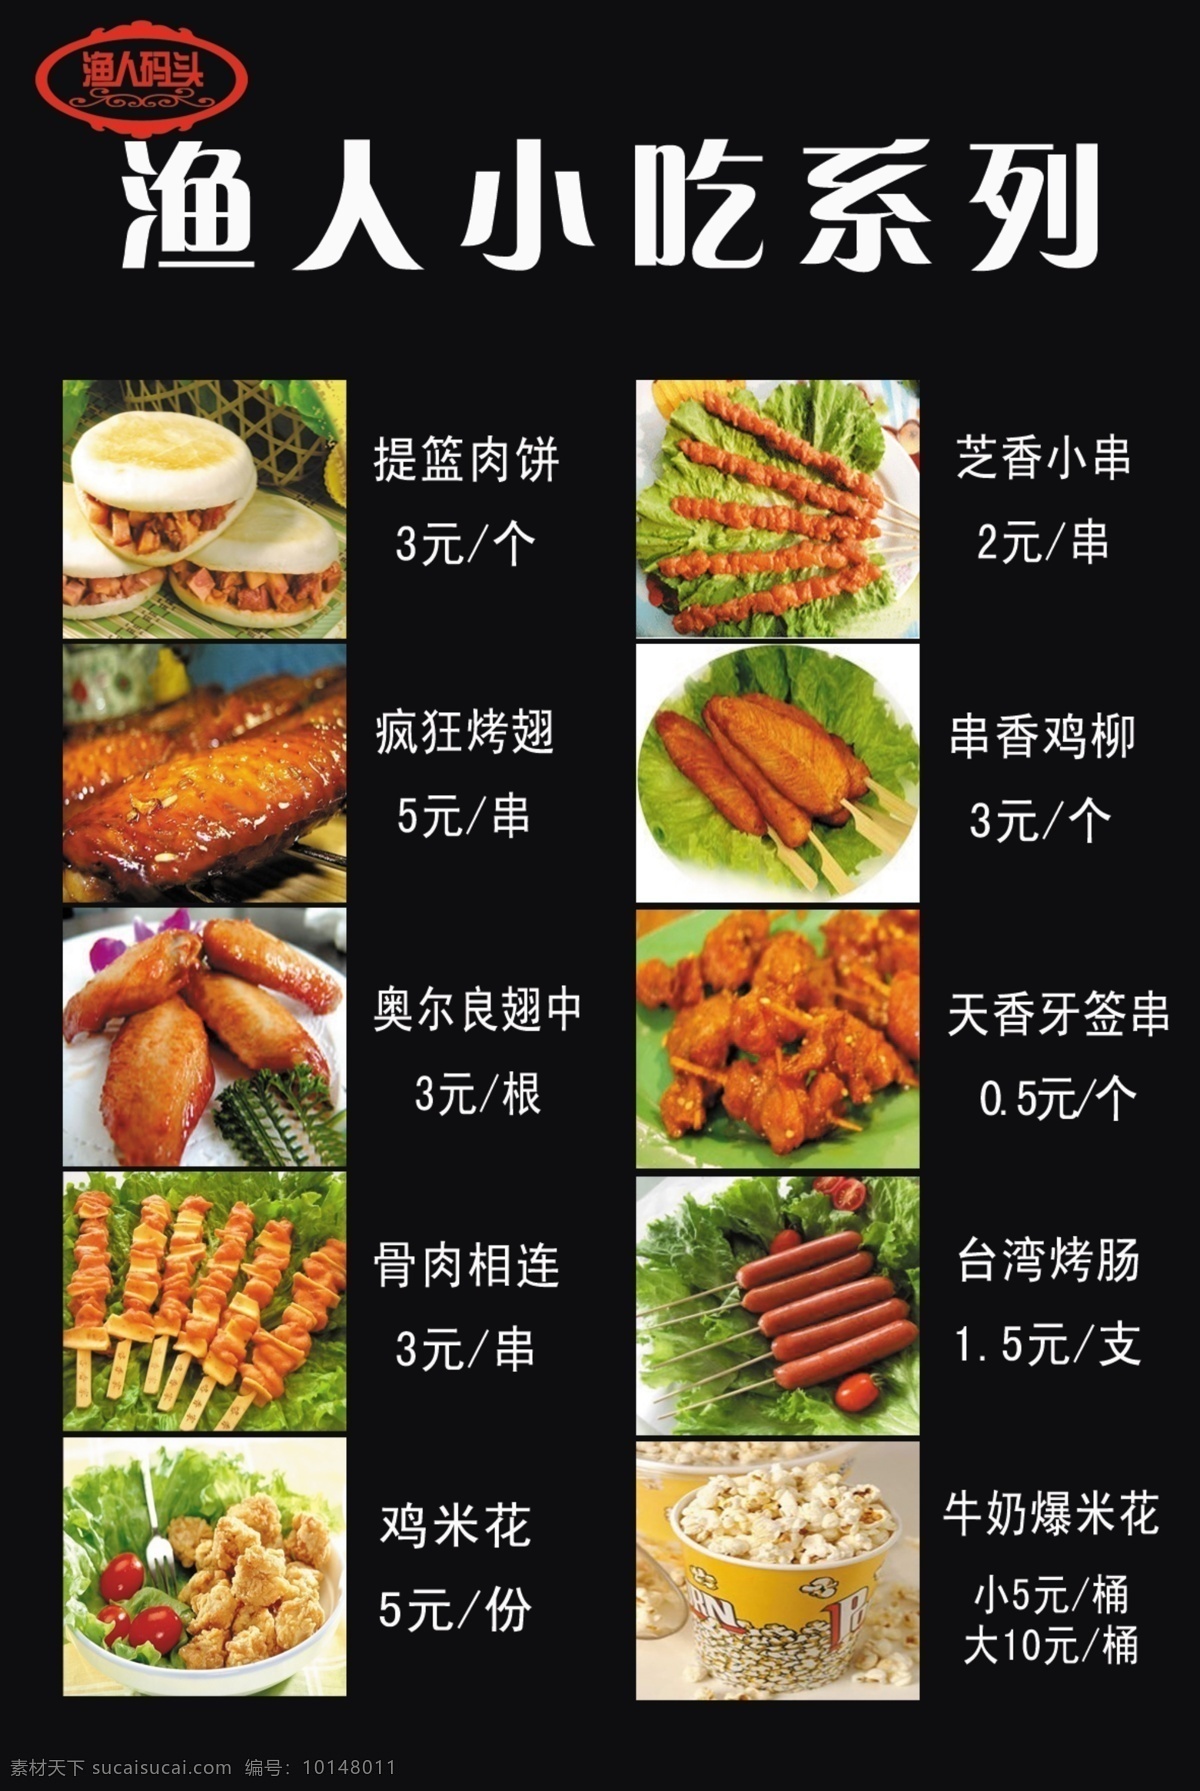 小吃系列 沛县龙飞网 渔人码头 广告牌 小吃广告 方便小吃 餐饮美食 生活百科